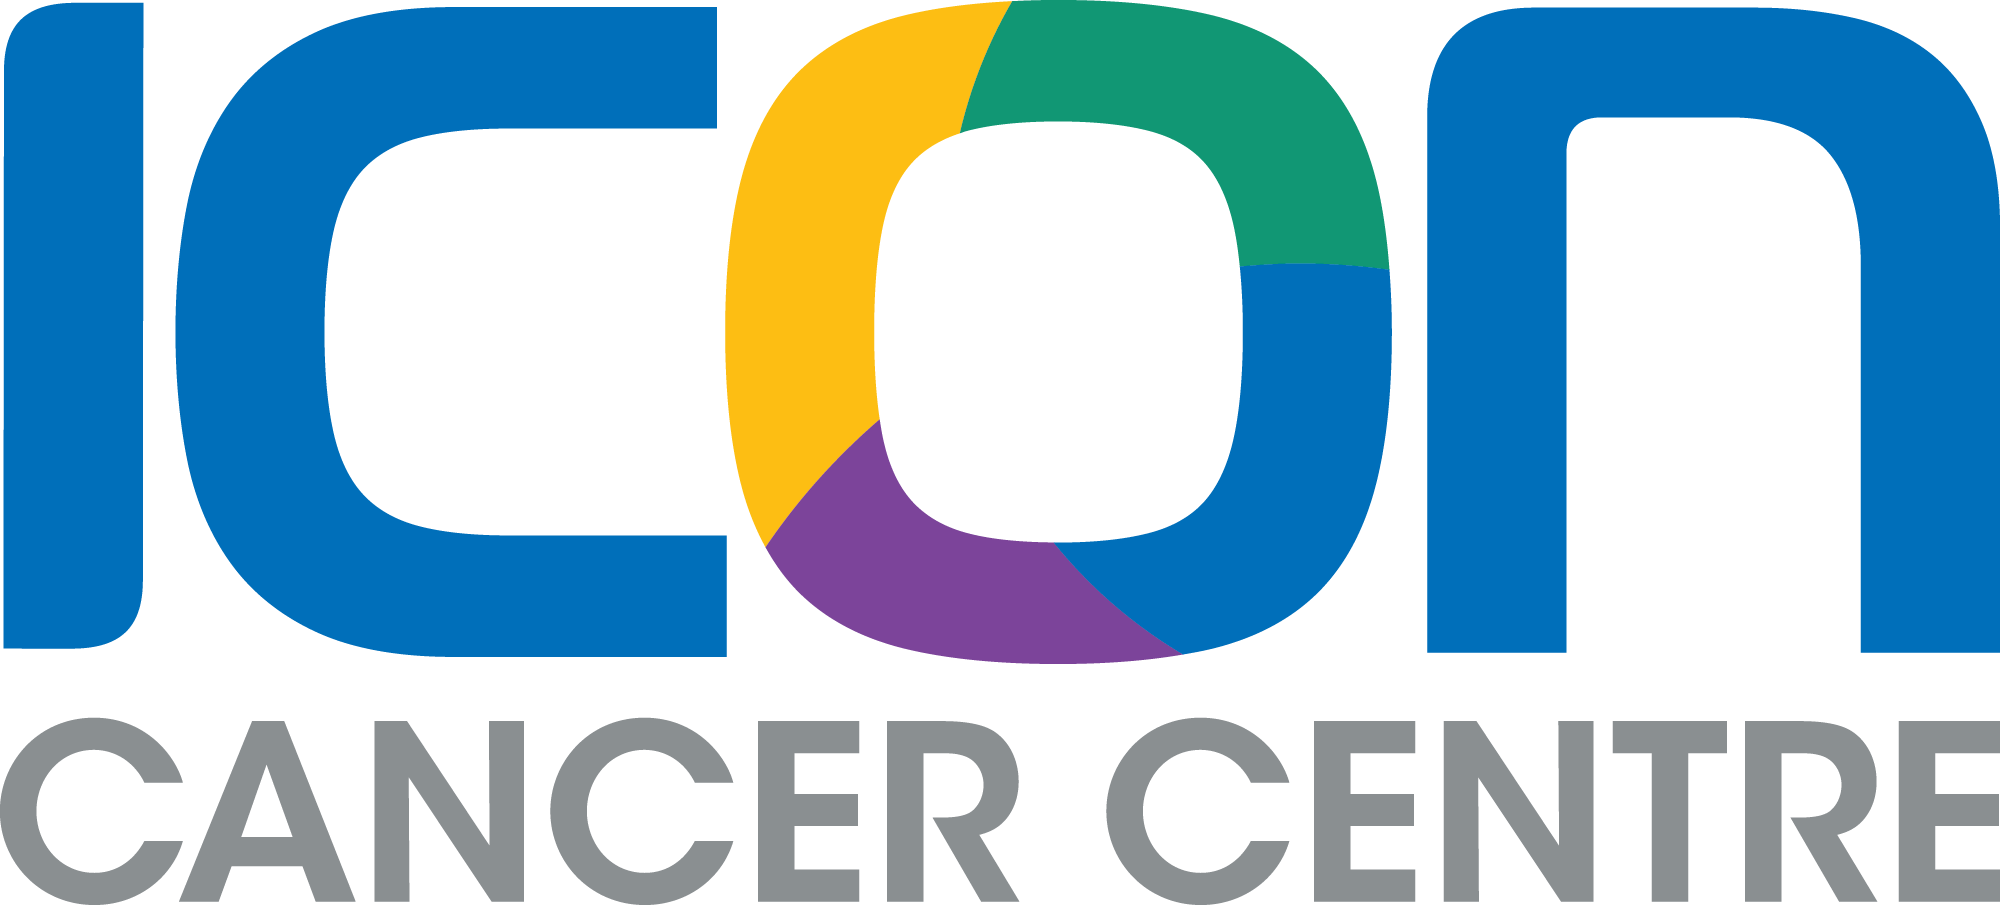 ICC AU Logo CMYK